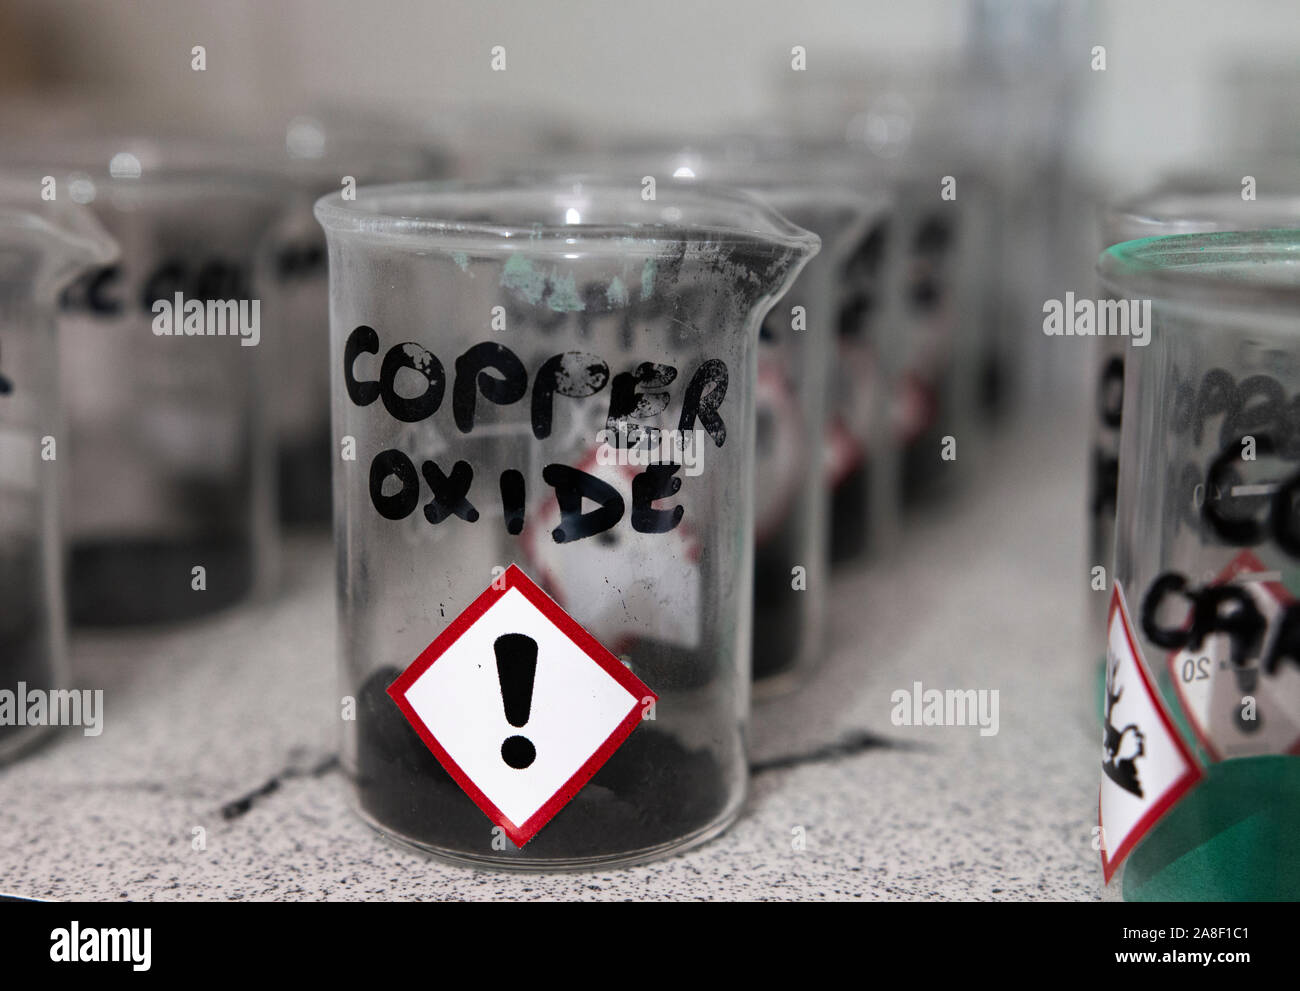 Kupferoxid Pulver in einem becherglas in einer chemischen Store in Großbritannien Stockfoto